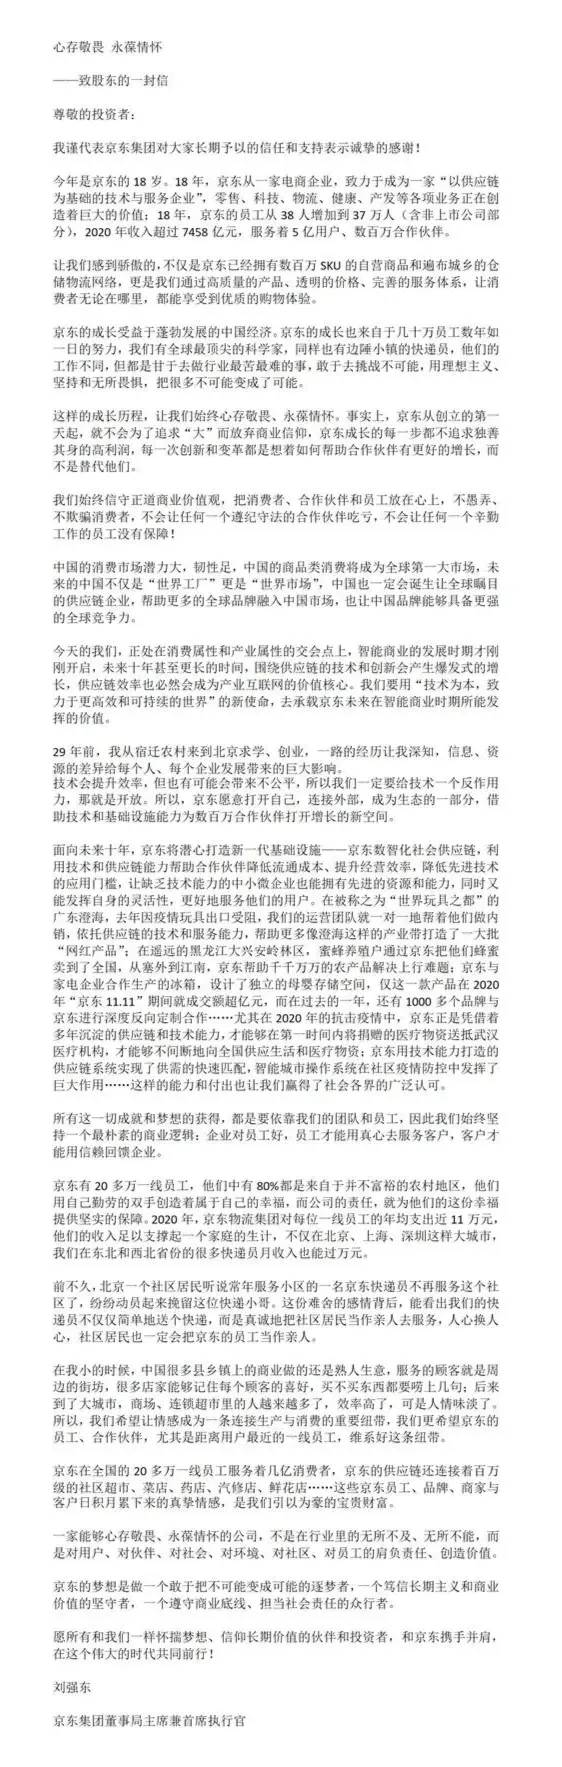 从刘强东近日写给京东股东的长信来看，刘强东没有变